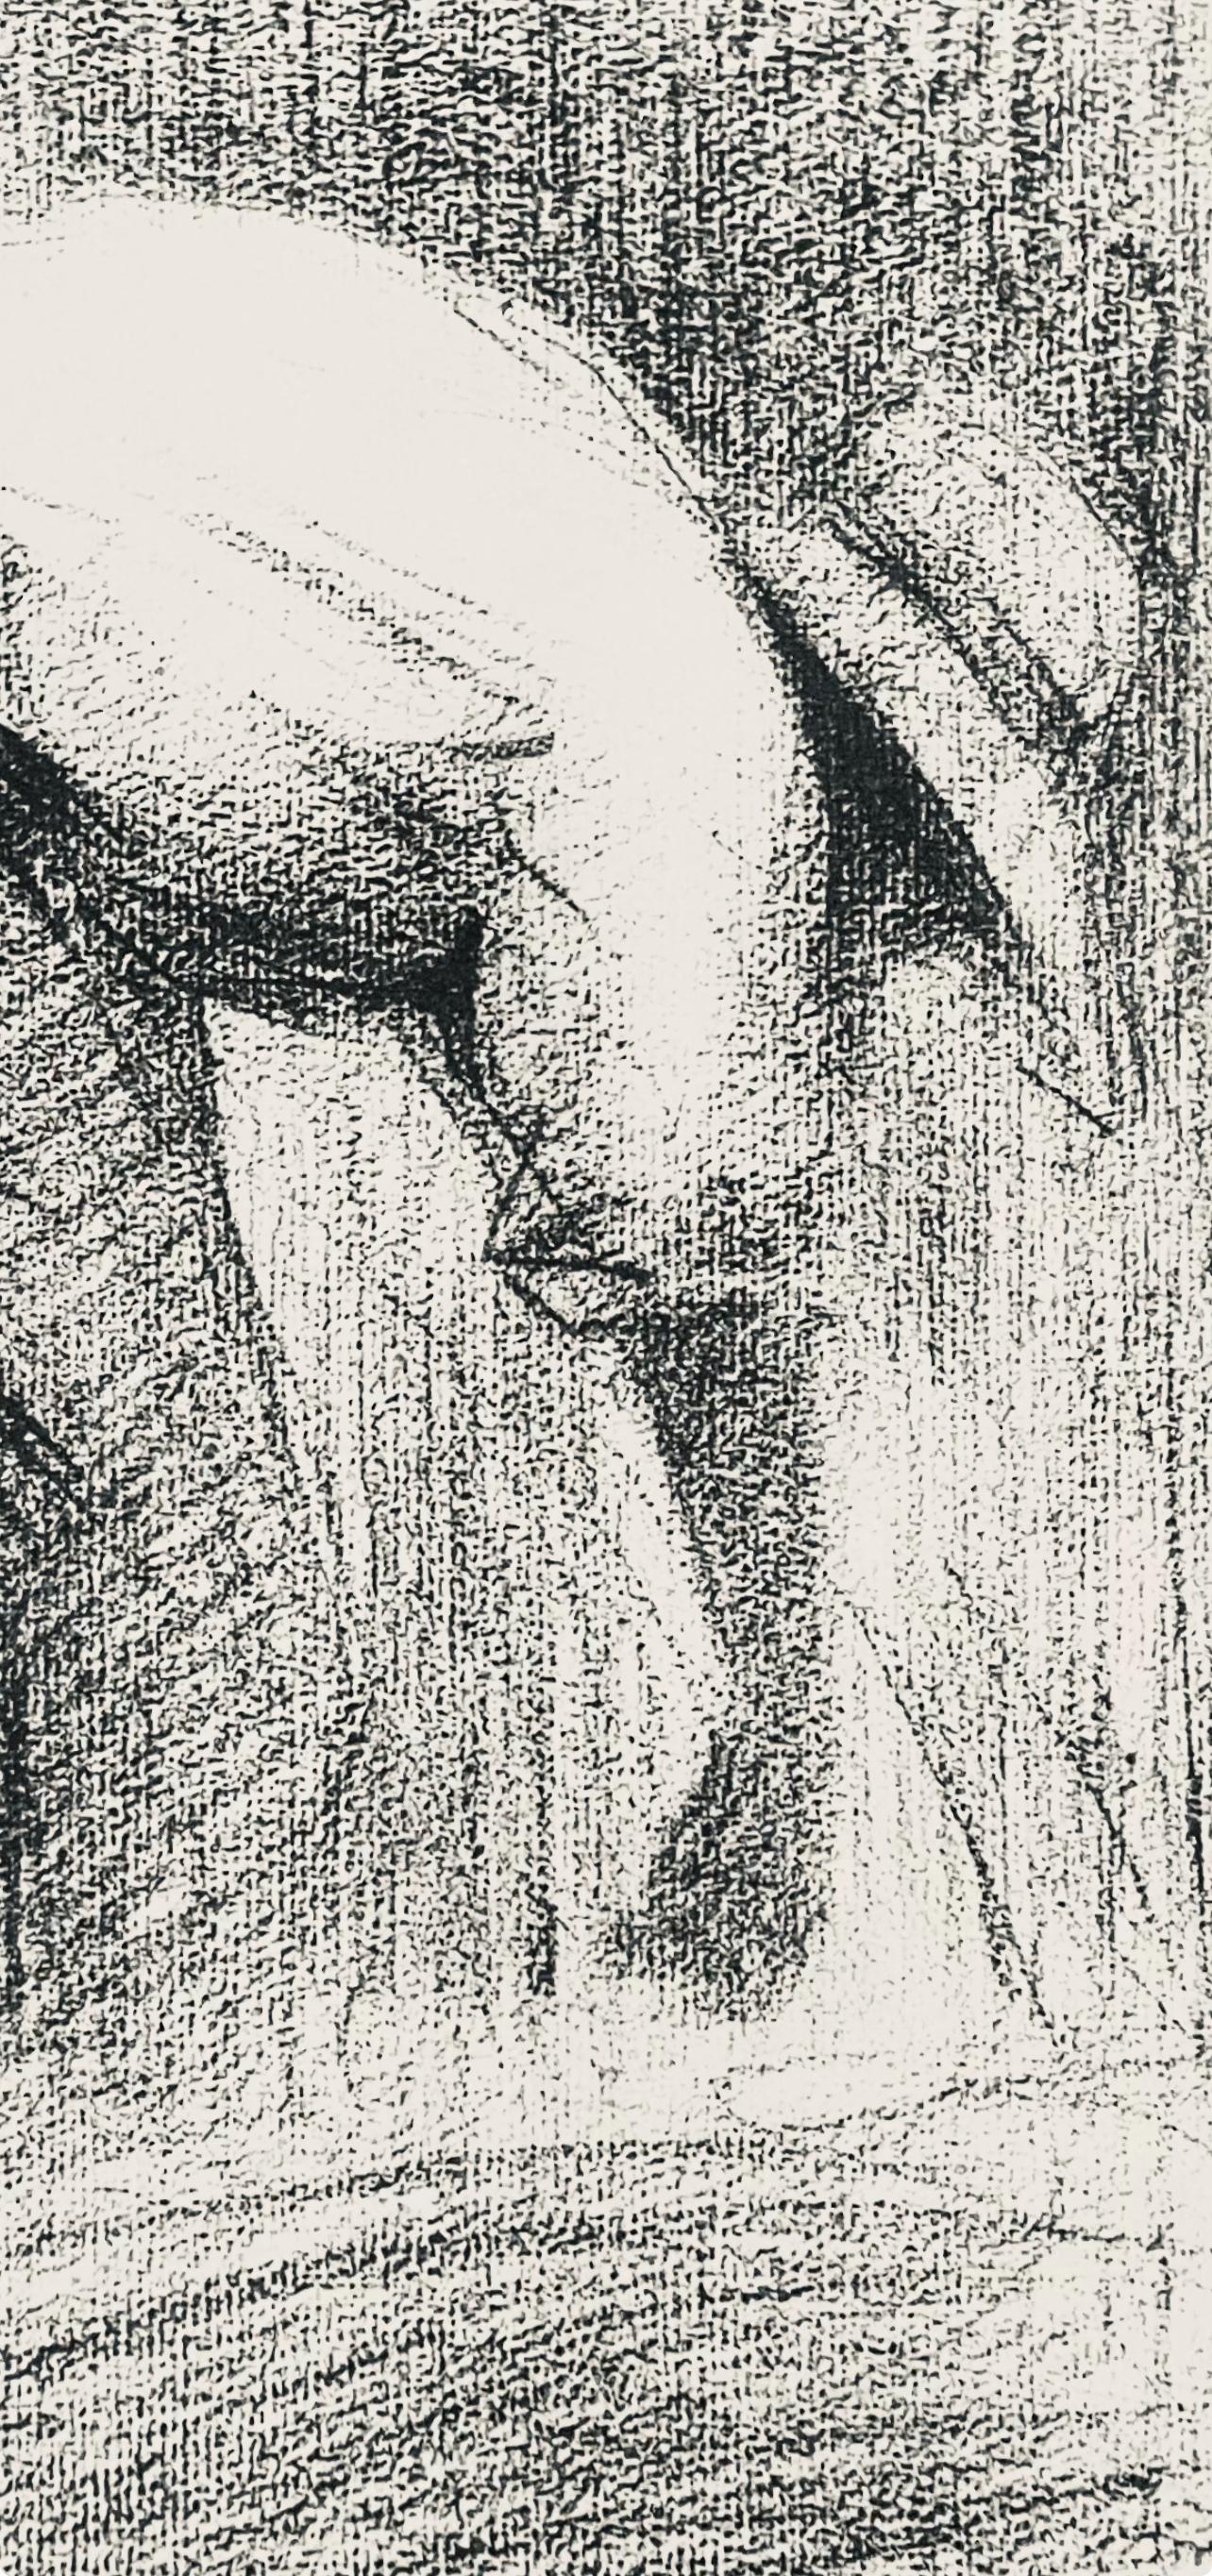 Seurat, Le moissonneur, Seurat (after) - Print by Georges Seurat